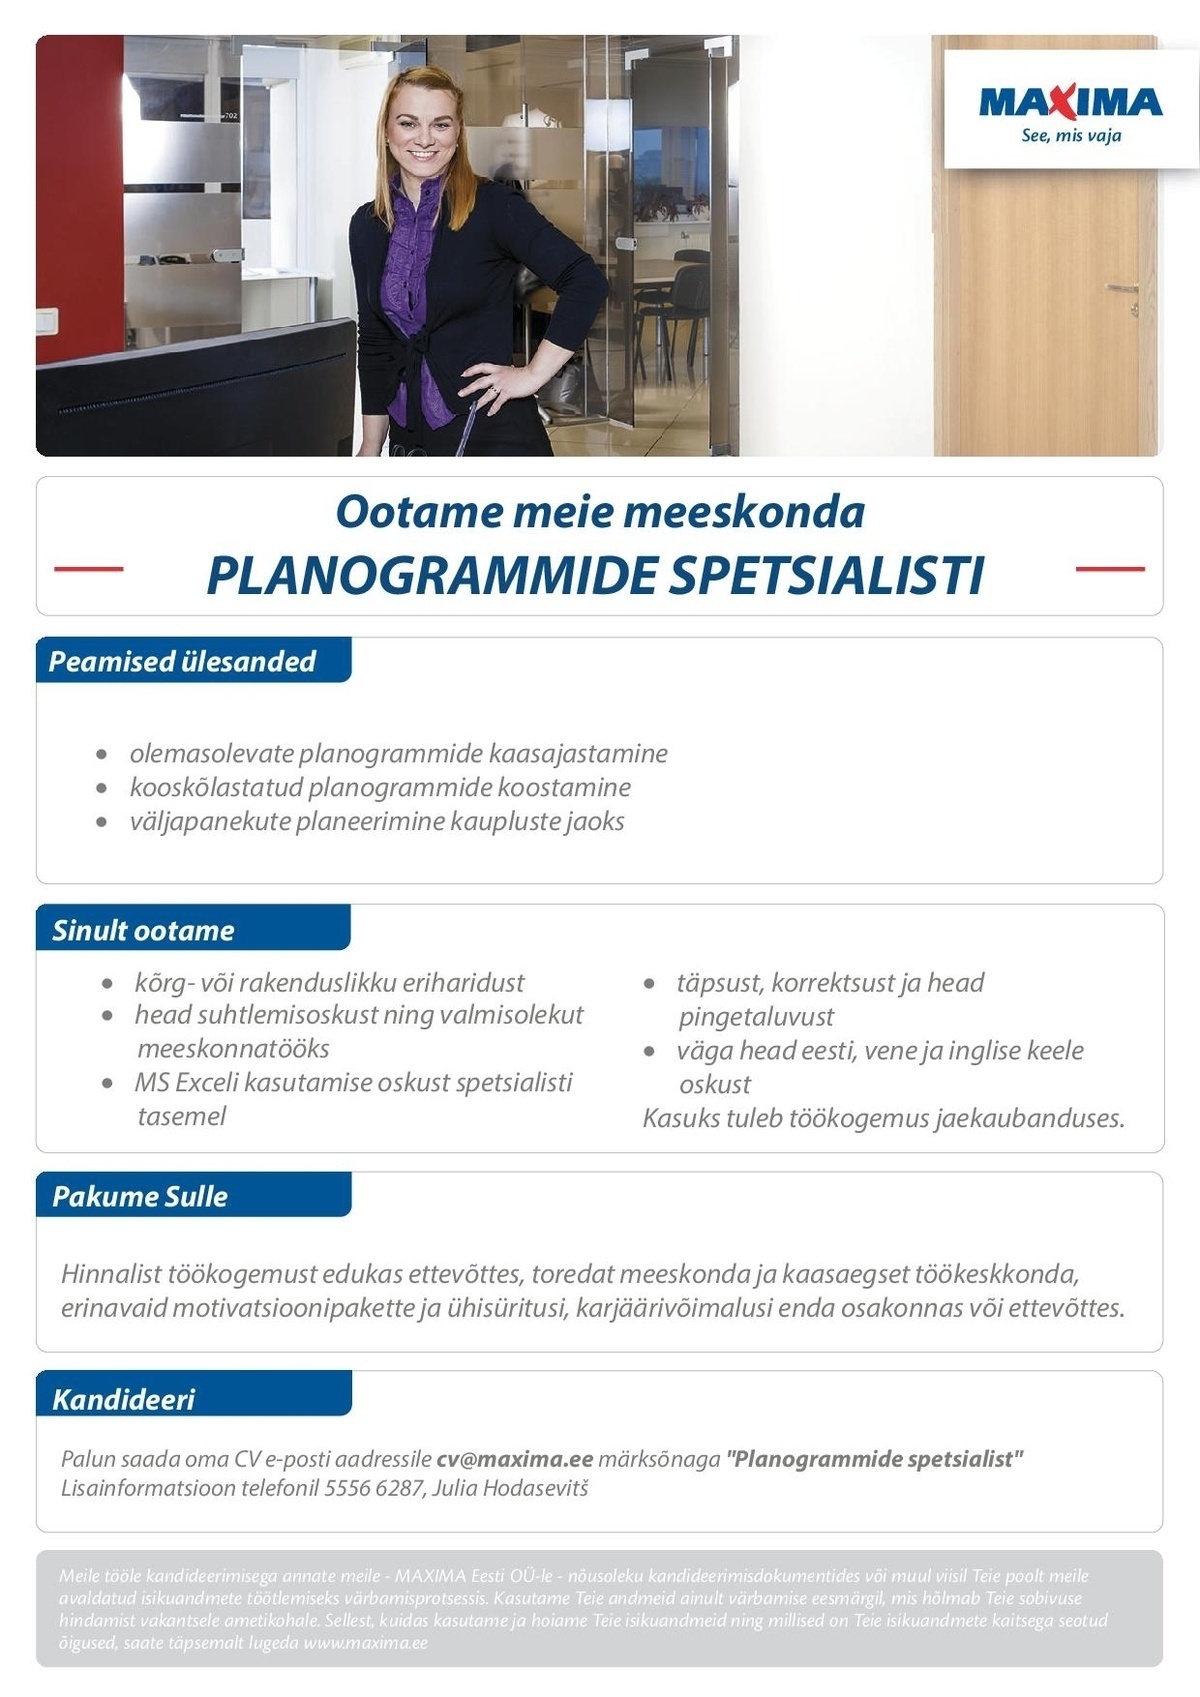 Maxima Eesti OÜ Planogrammide spetsialist 